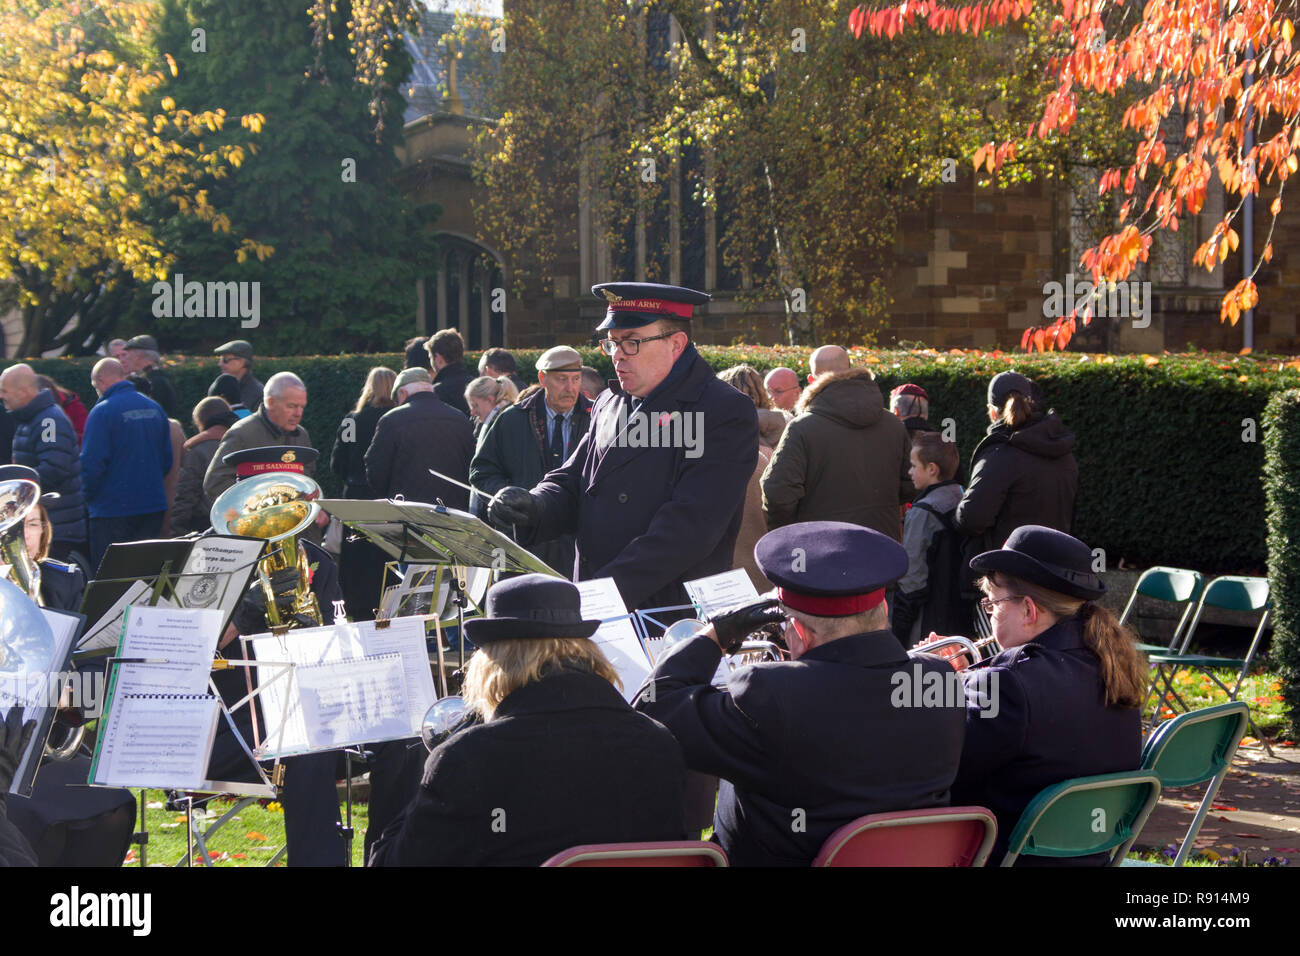 Esercito della salvezza fascia giocare a ricordo di un evento di domenica, Northampton, Regno Unito Foto Stock